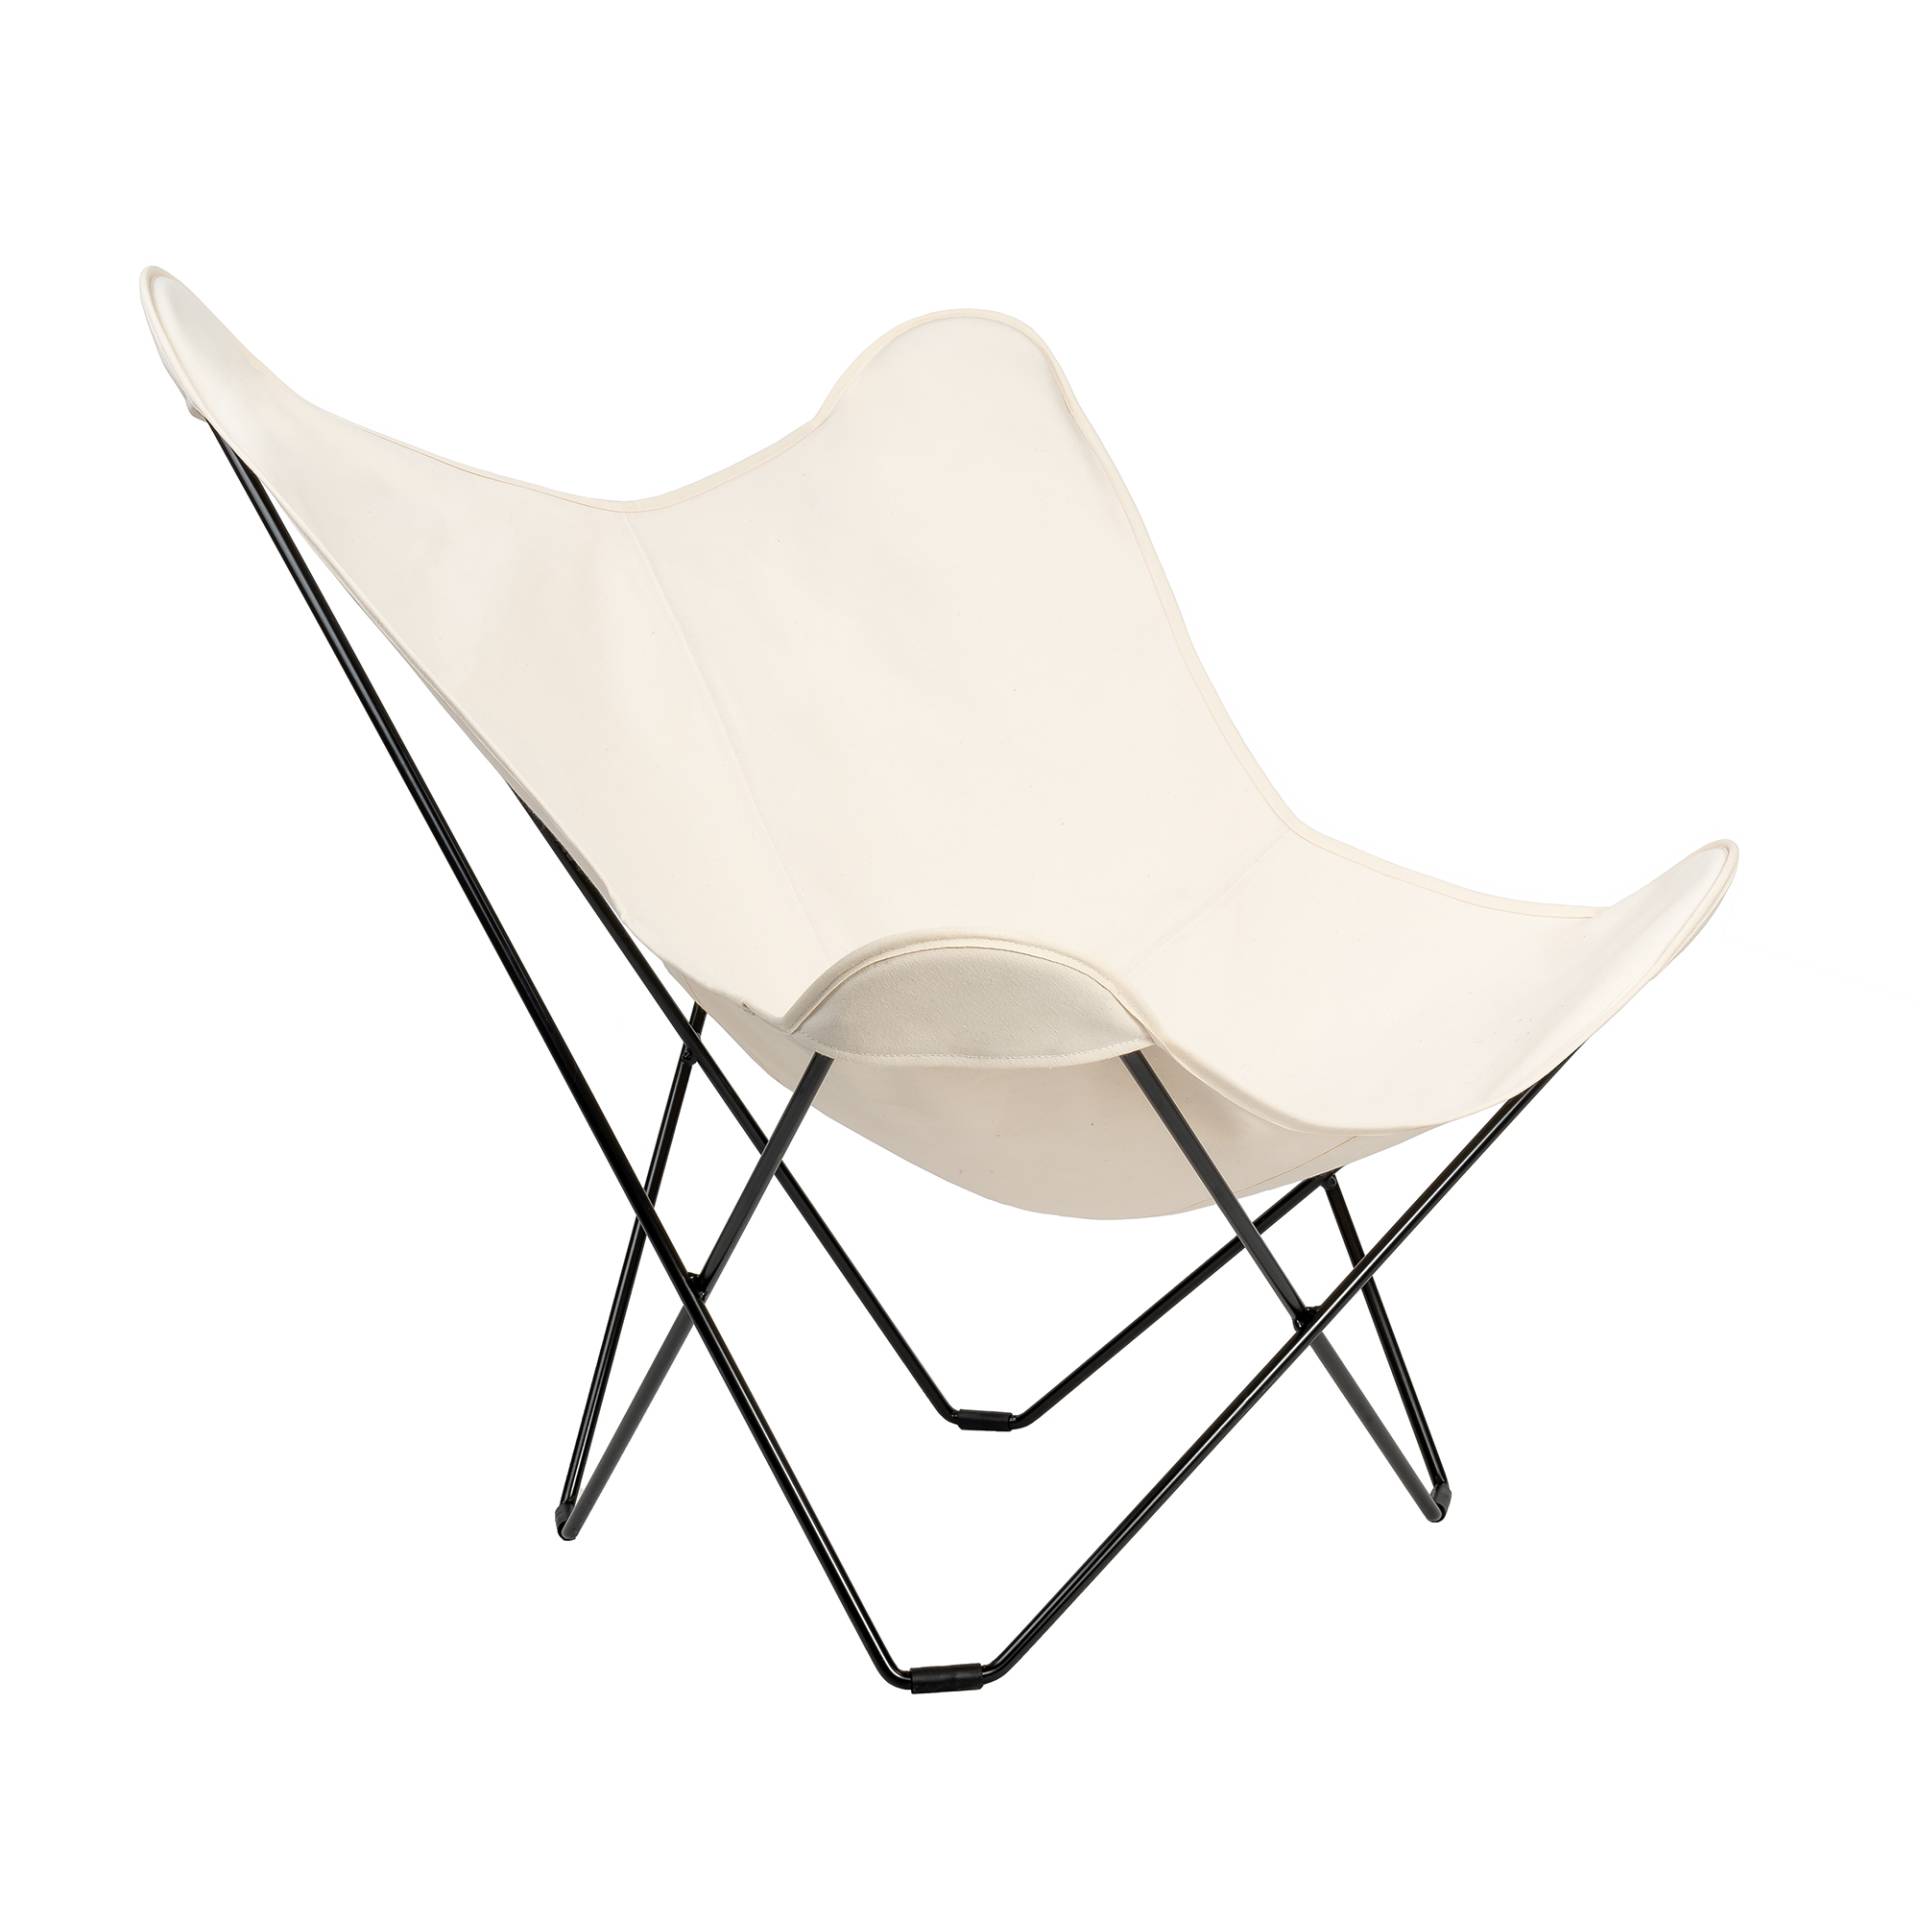 cuero - Cotton Canvas Mariposa Butterfly Chair - weiß/Baumwolle/BxHxT 87x92x86cm/Gestell Stahl schwarz lackiert von cuero